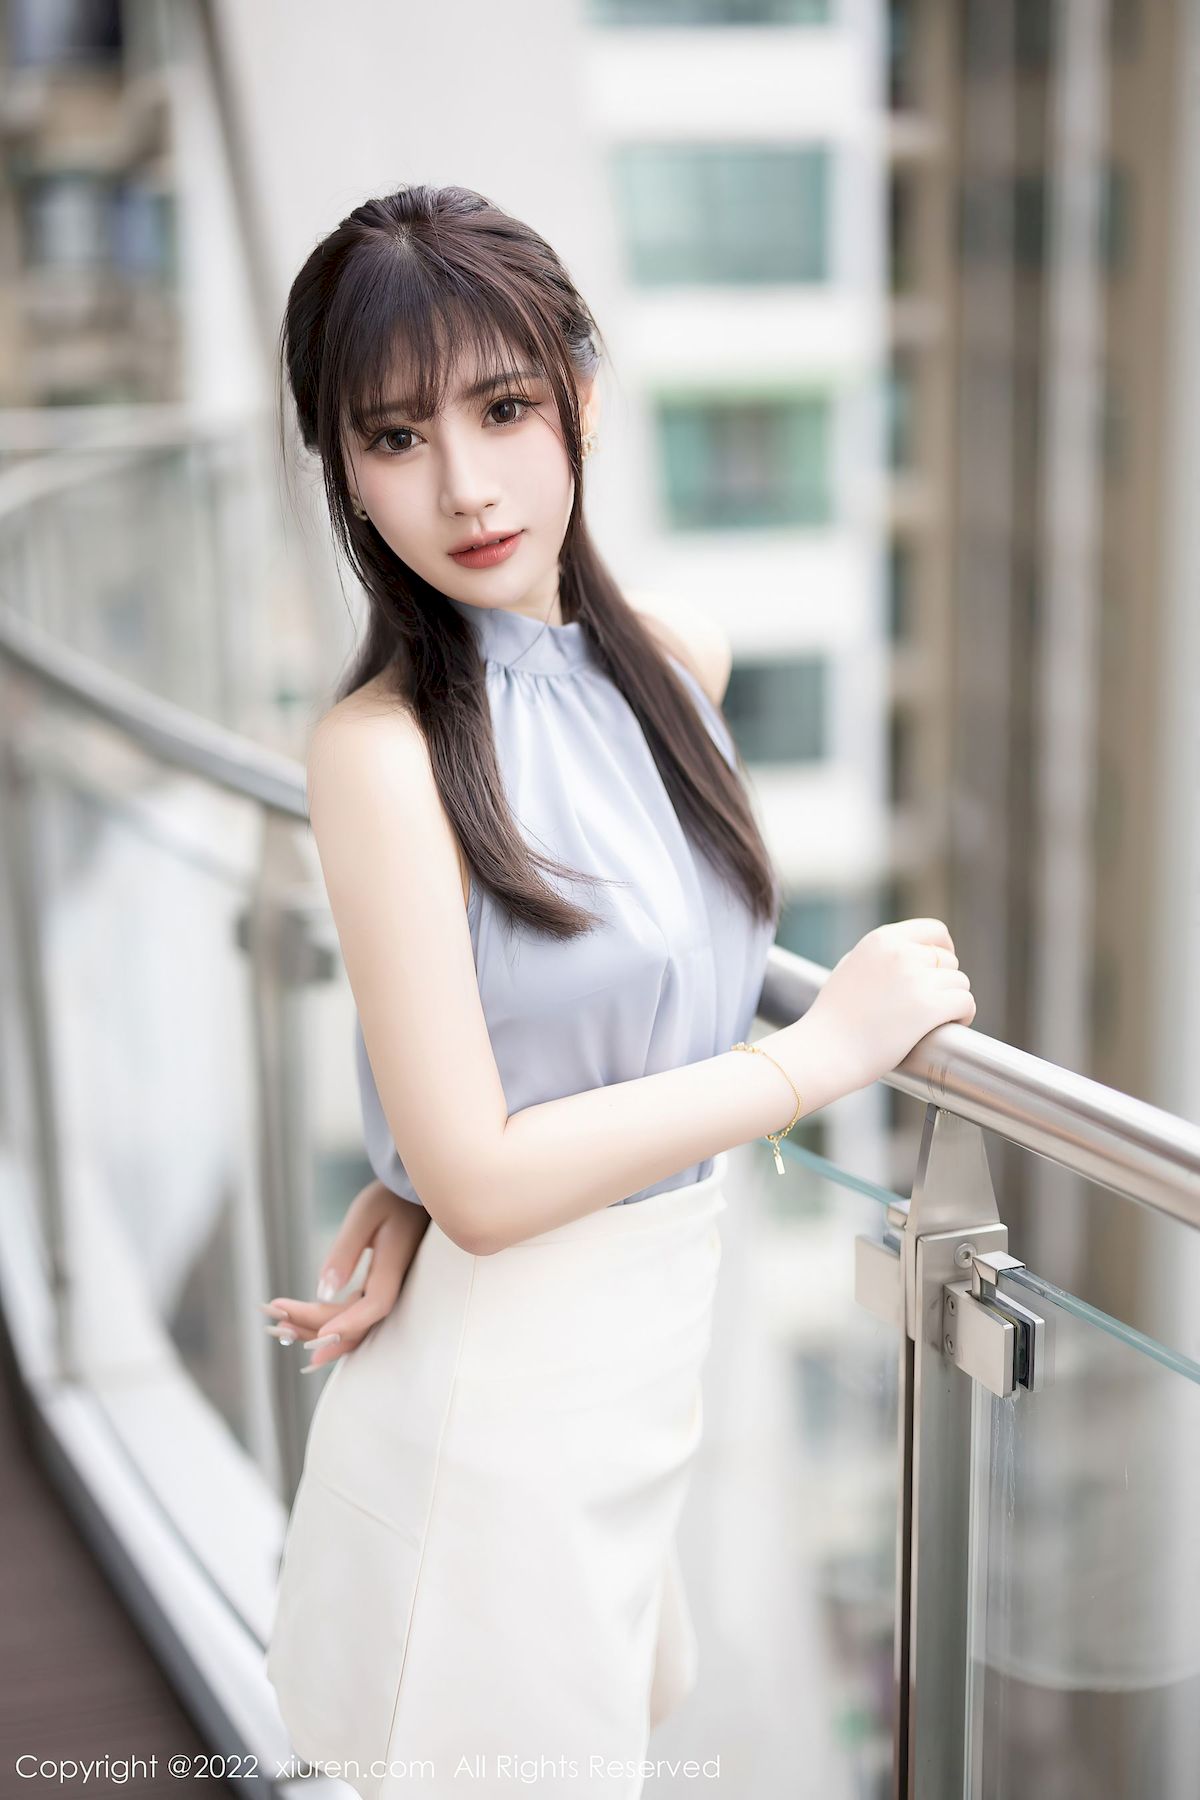 张欣欣淡蓝色上衣搭配白色短裙性感写真